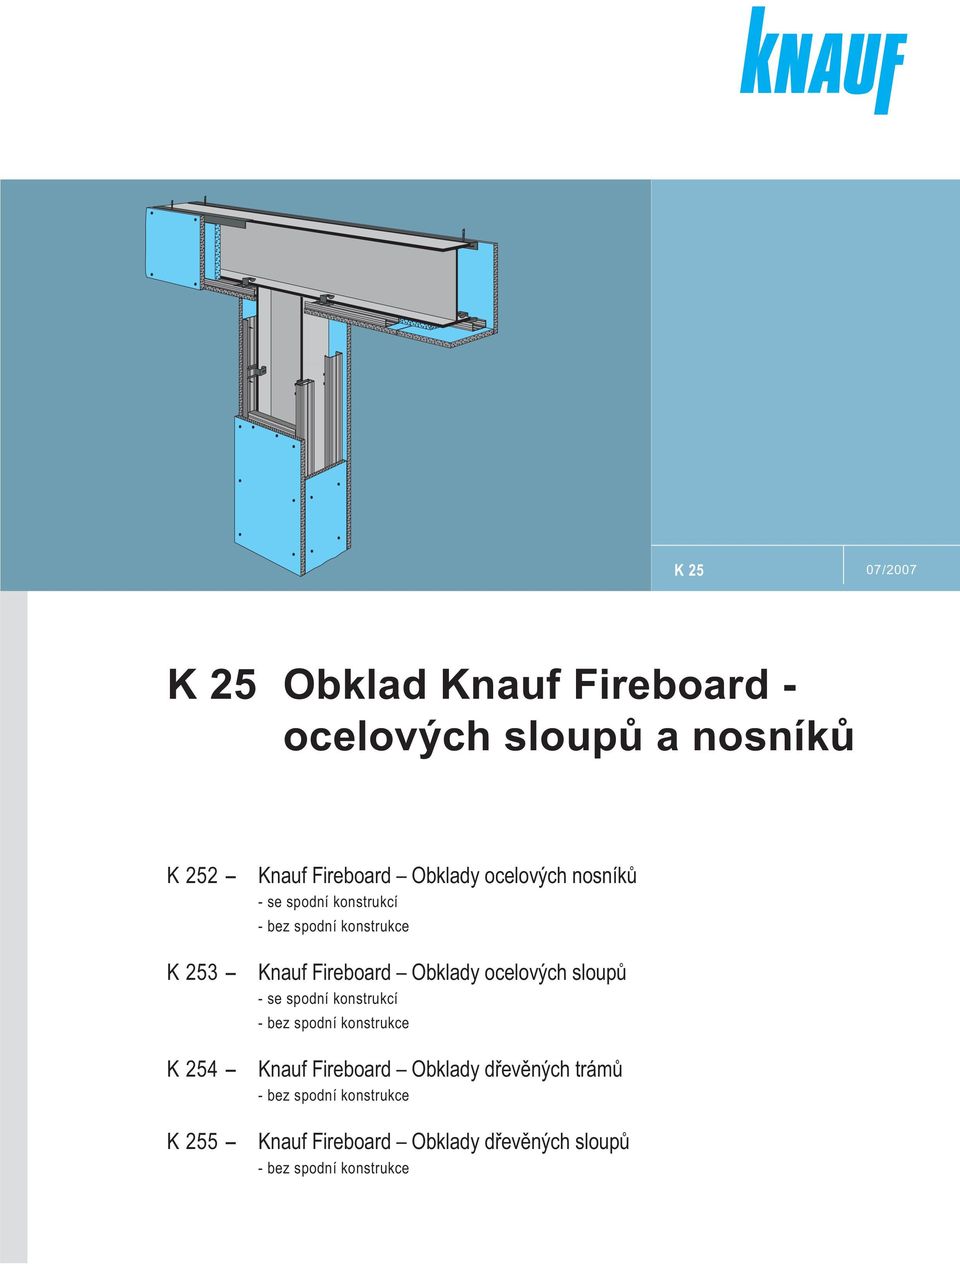 ocelových sloupů - se sponí konstrukcí - bez sponí konstrukce K 254 - Knauf Fireboar Obklay